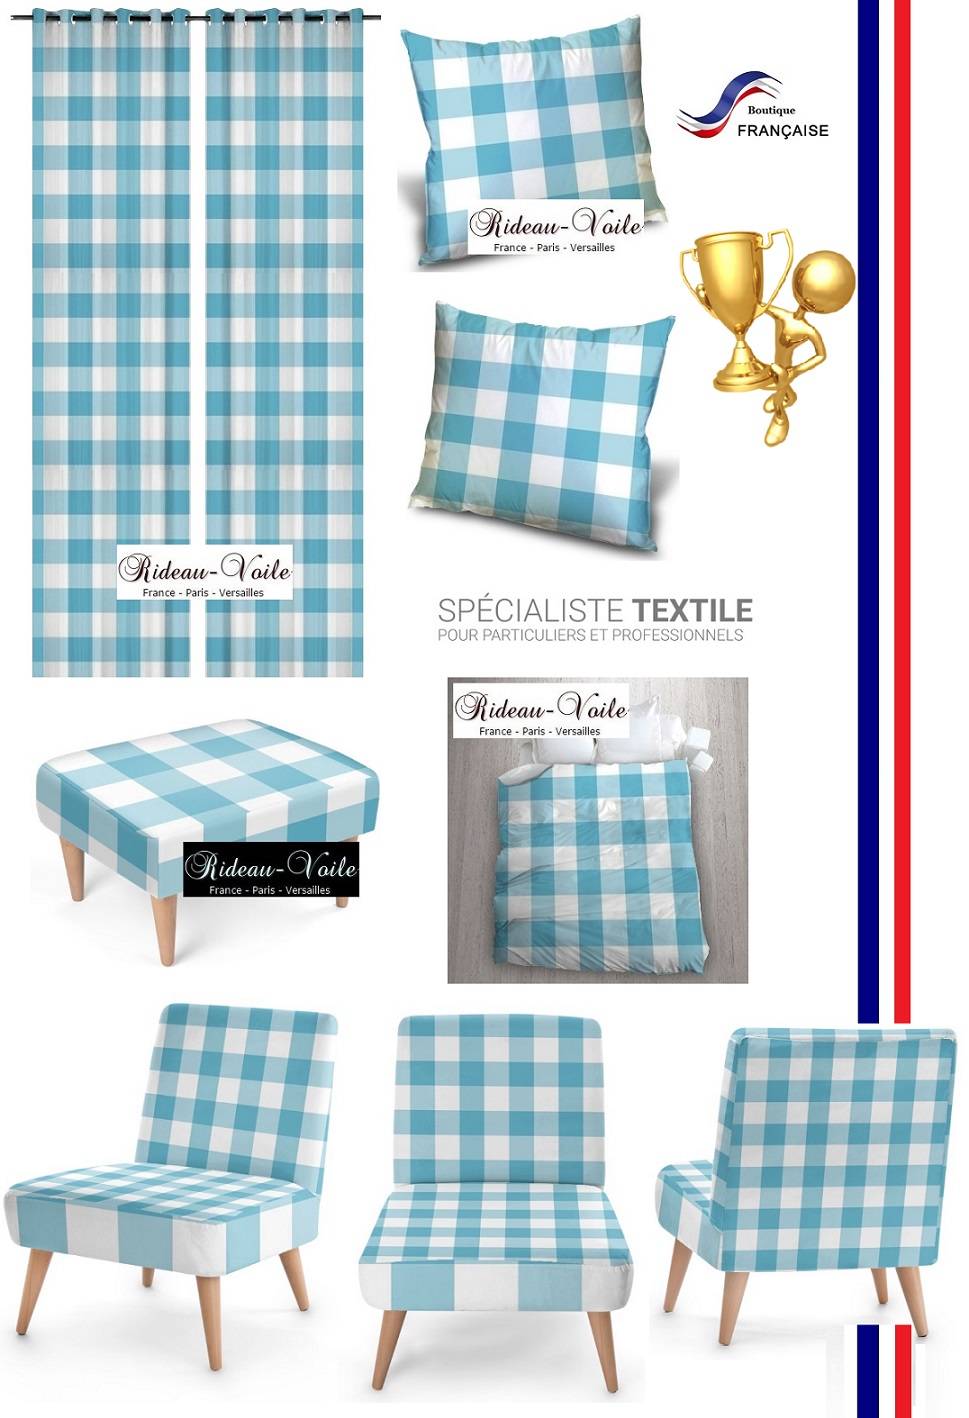 tissu textile ameublement fauteuil ignifugé non feu M1 siège carrés carreaux motif imprimé vichy bleu blanc rideau couette coussin siège au mètre haut gamme